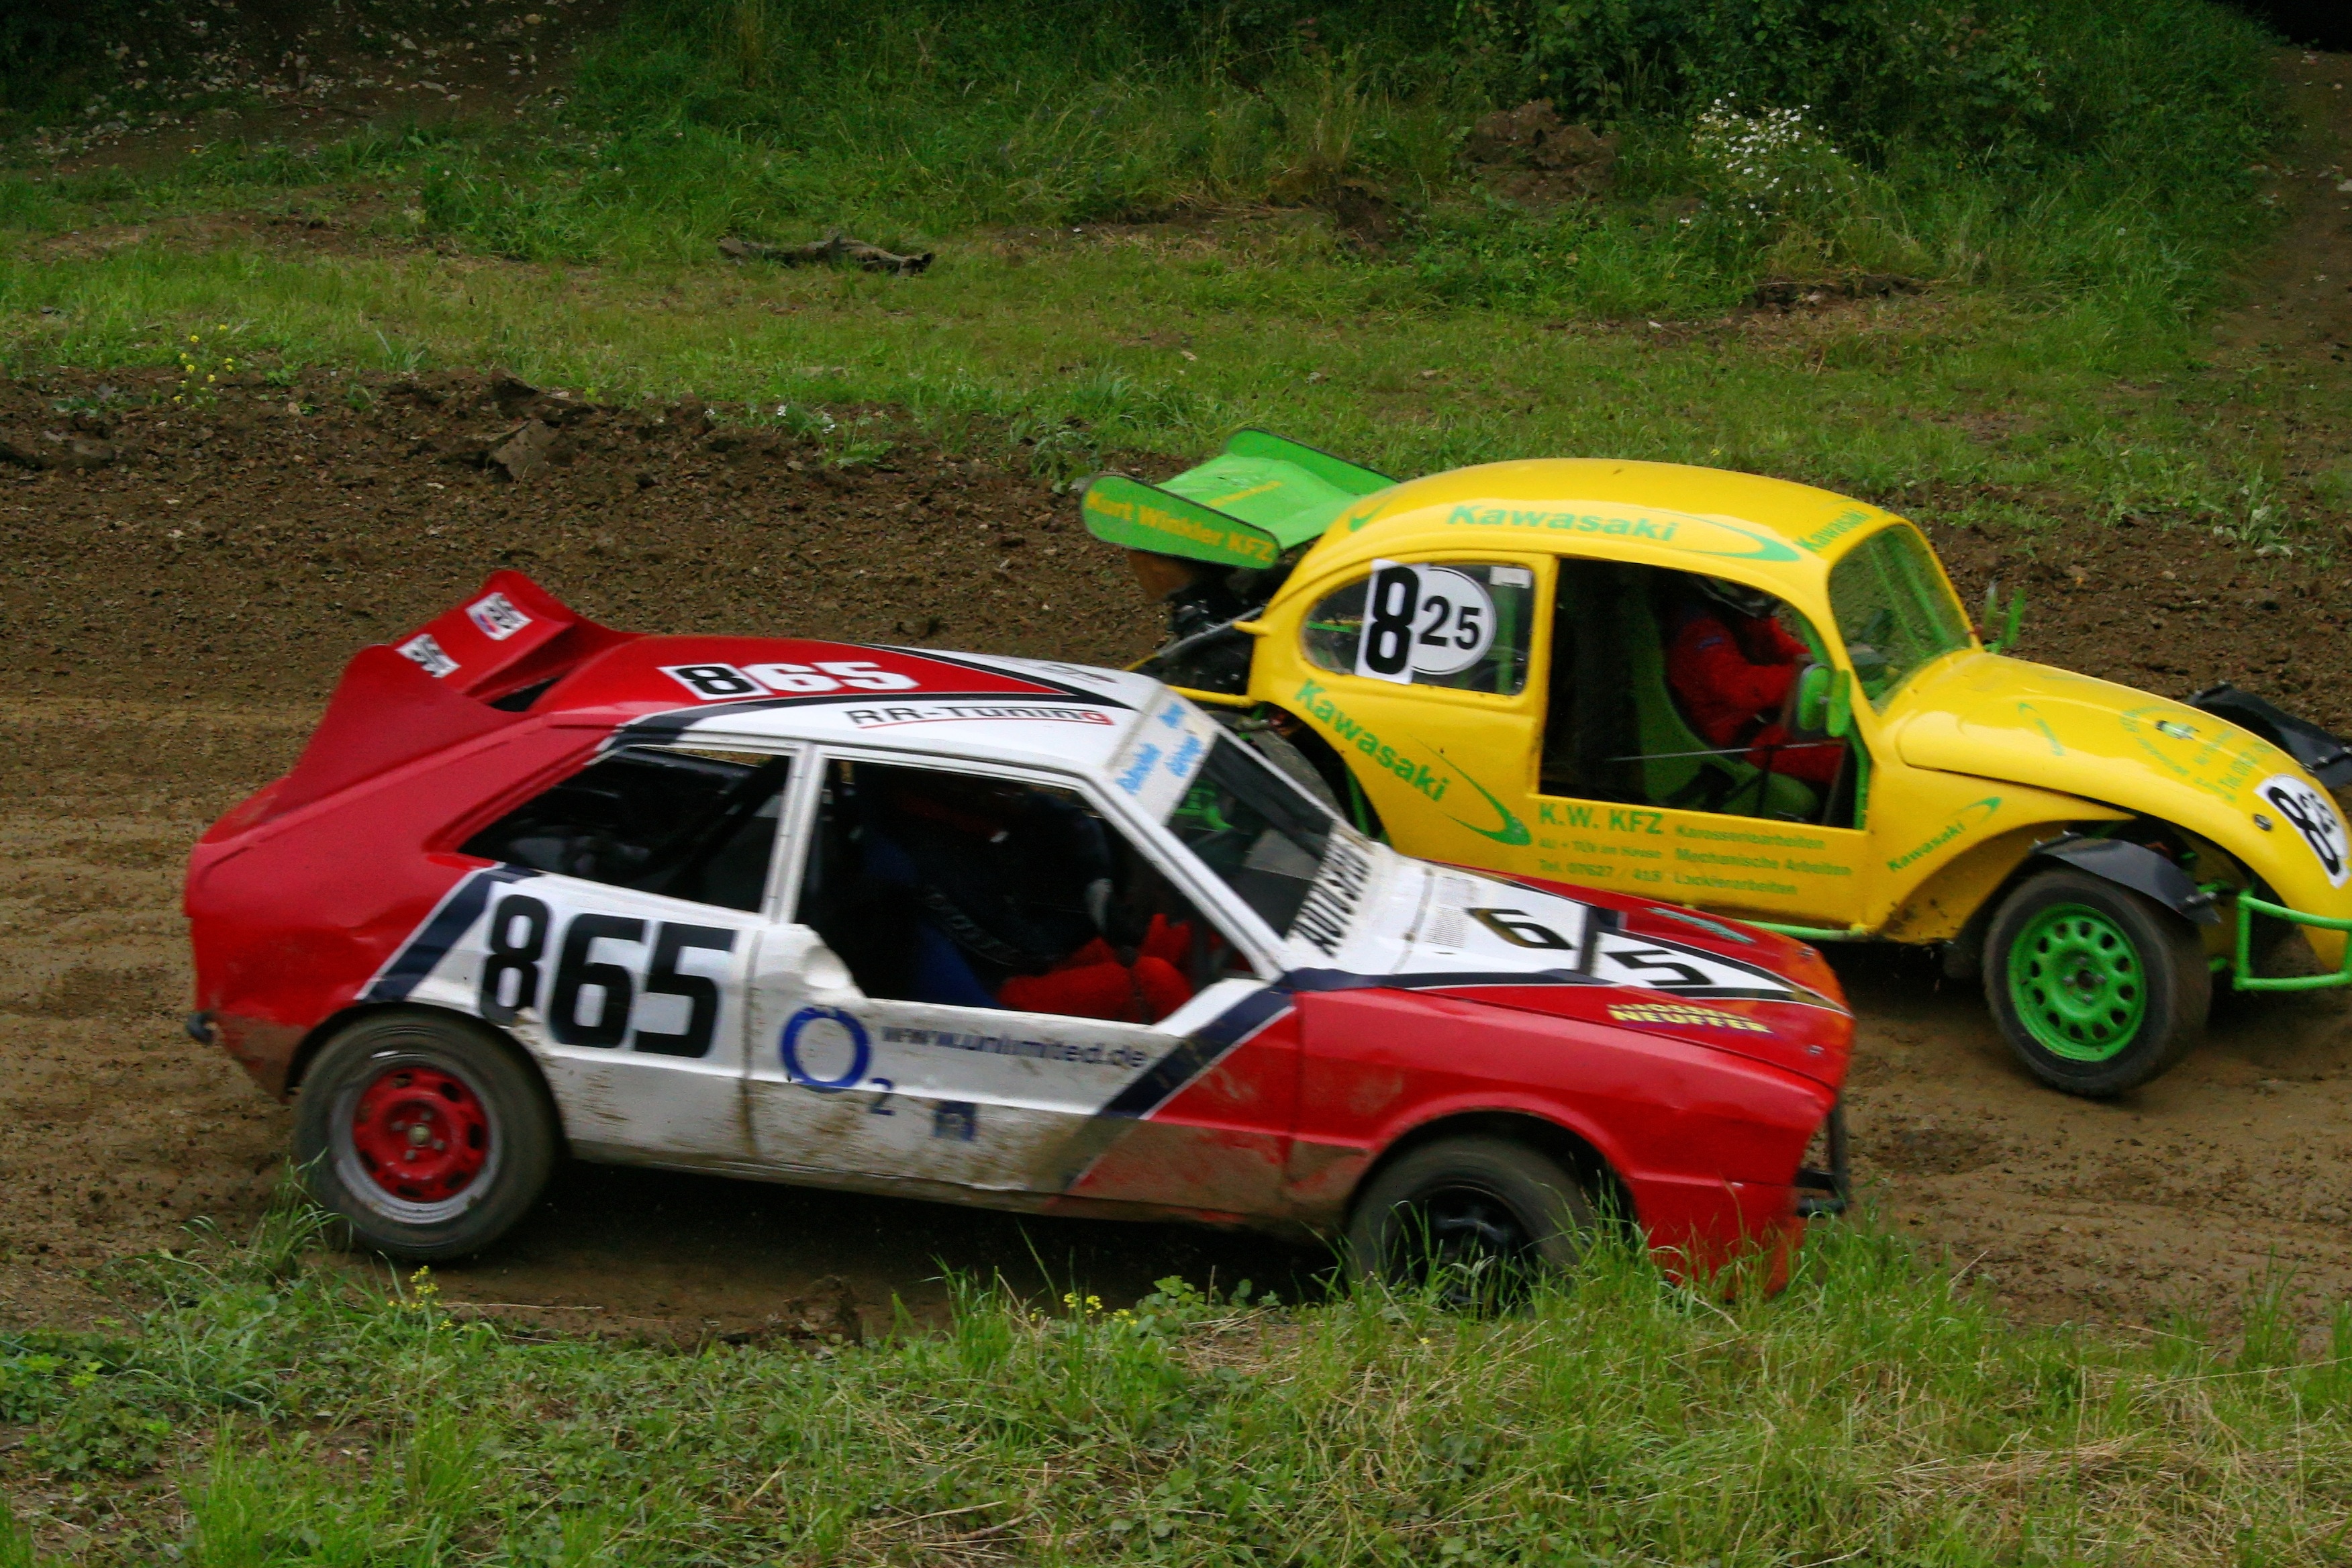 2 racing cars